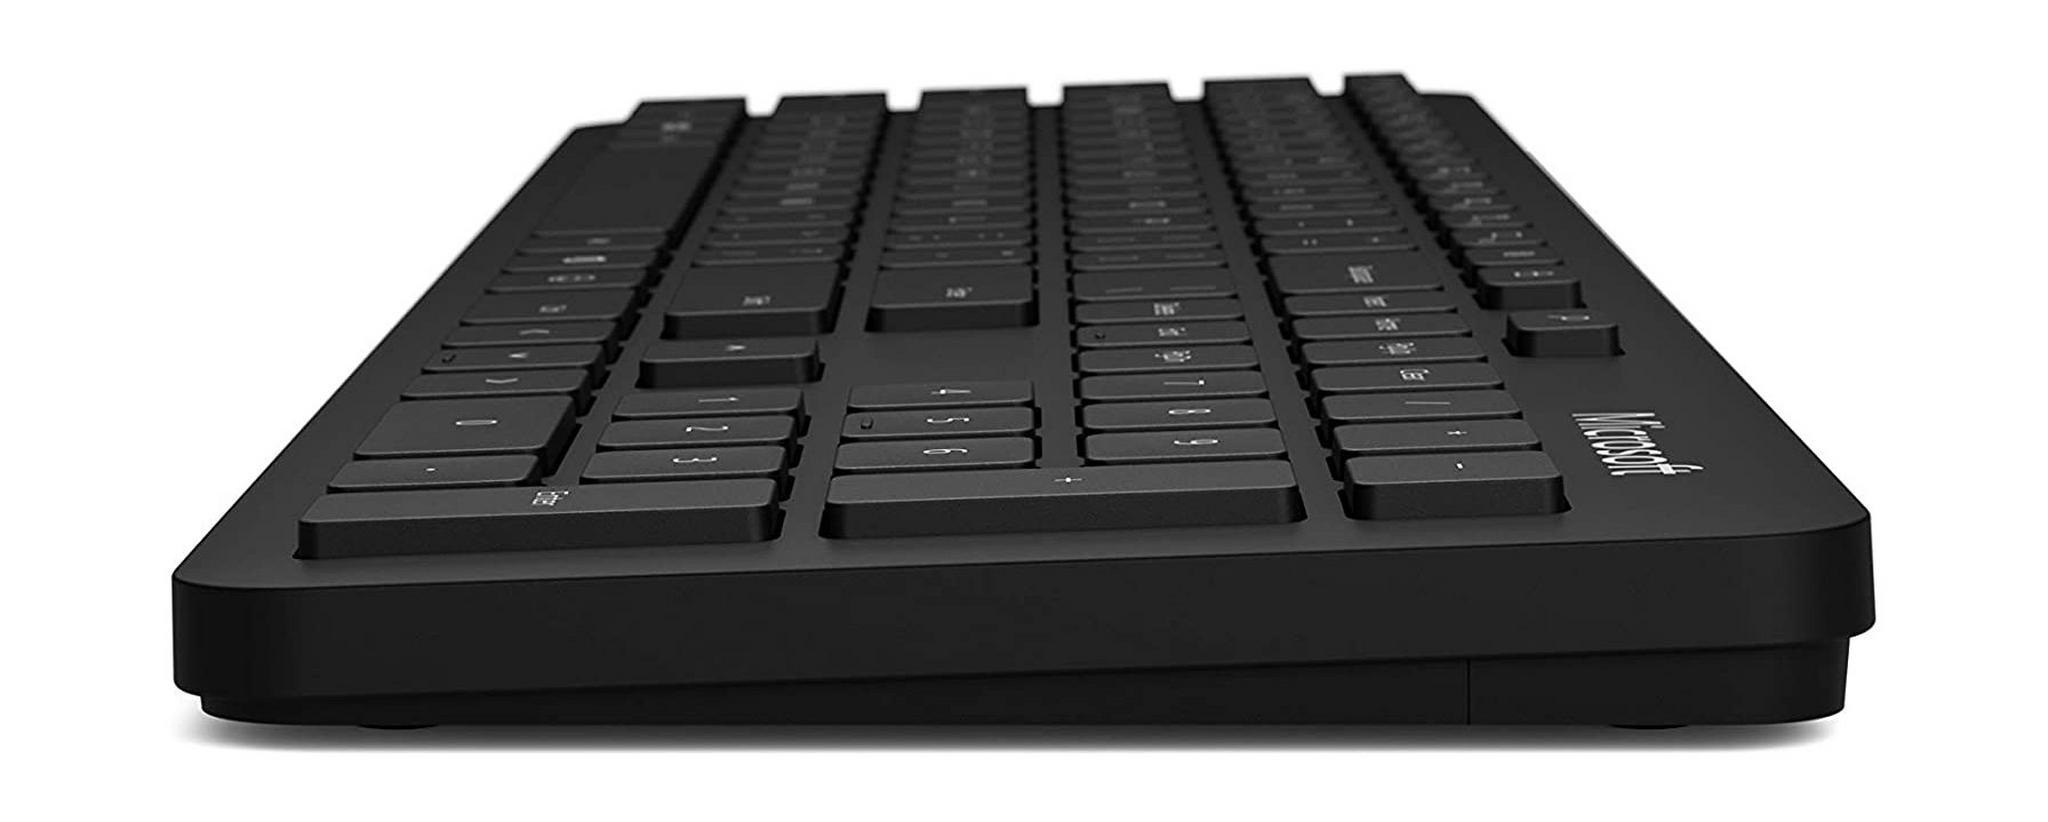 لوحة مفاتيح مايكروسوفت بتقنية البلوتوث(QSZ-00016) – أسود